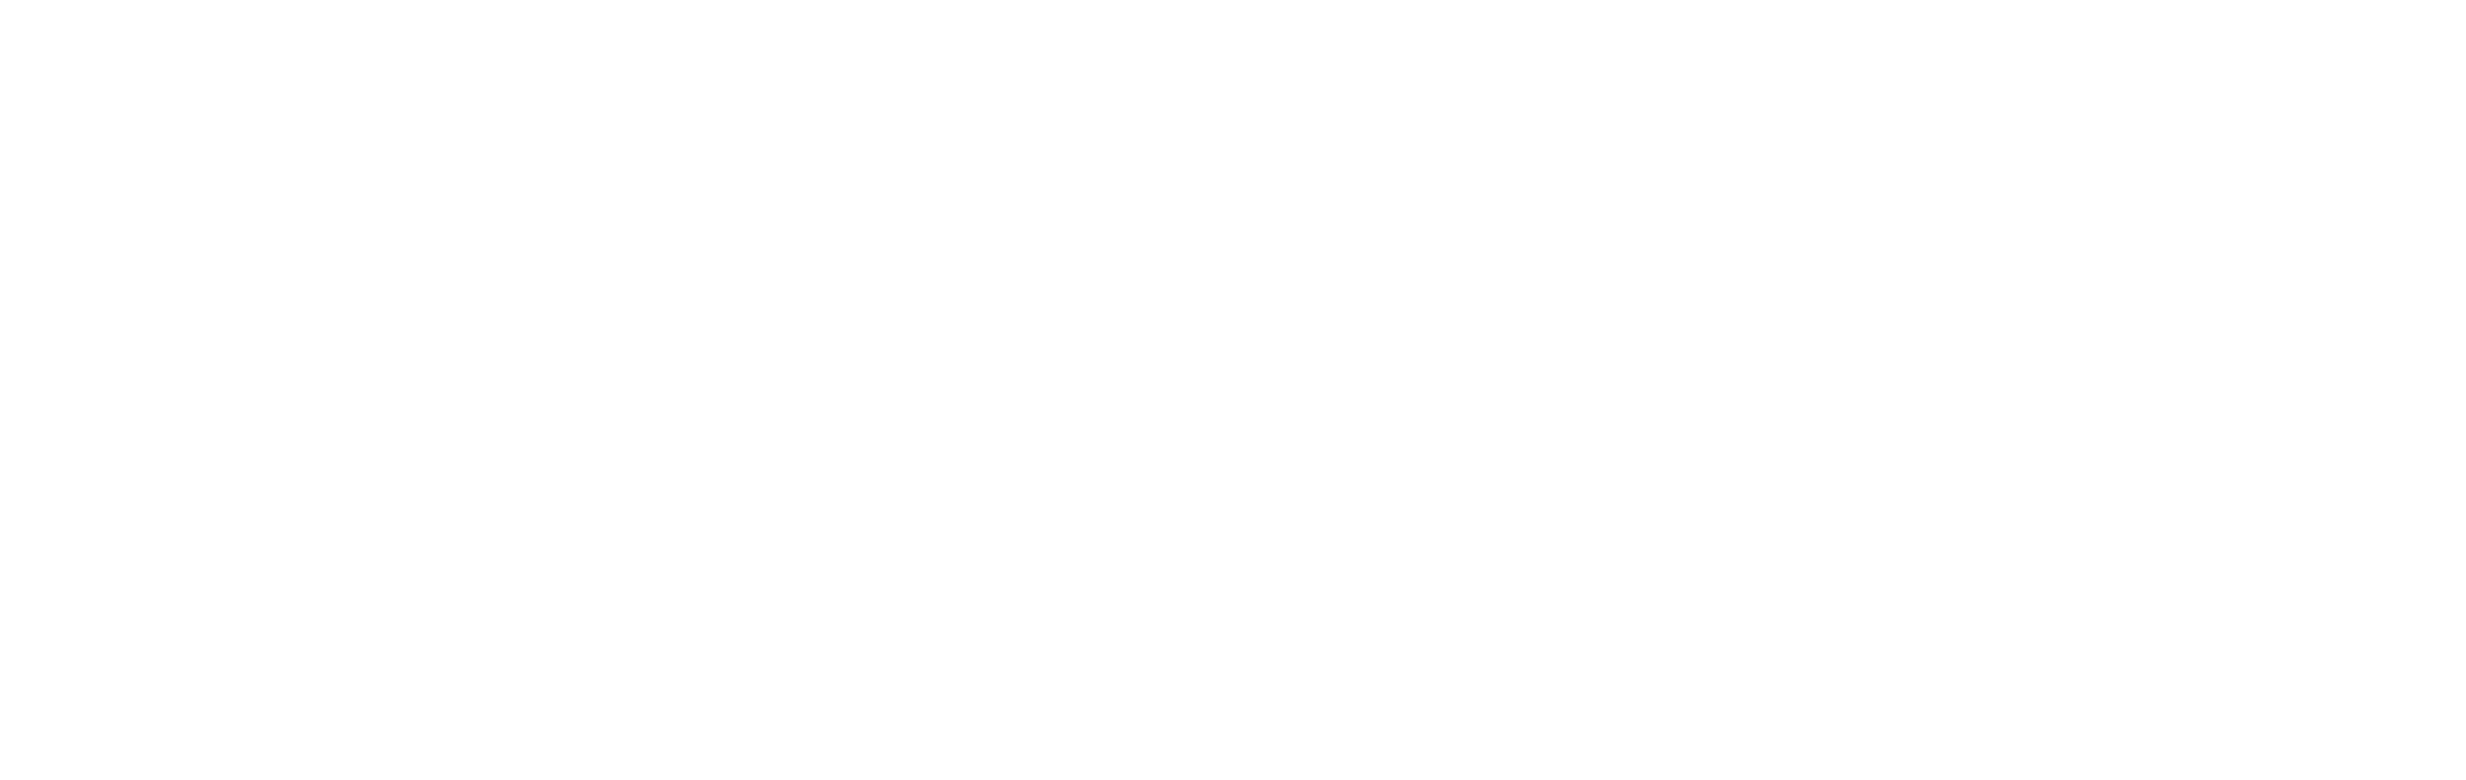 CloudBlu_NewEra_logo_white